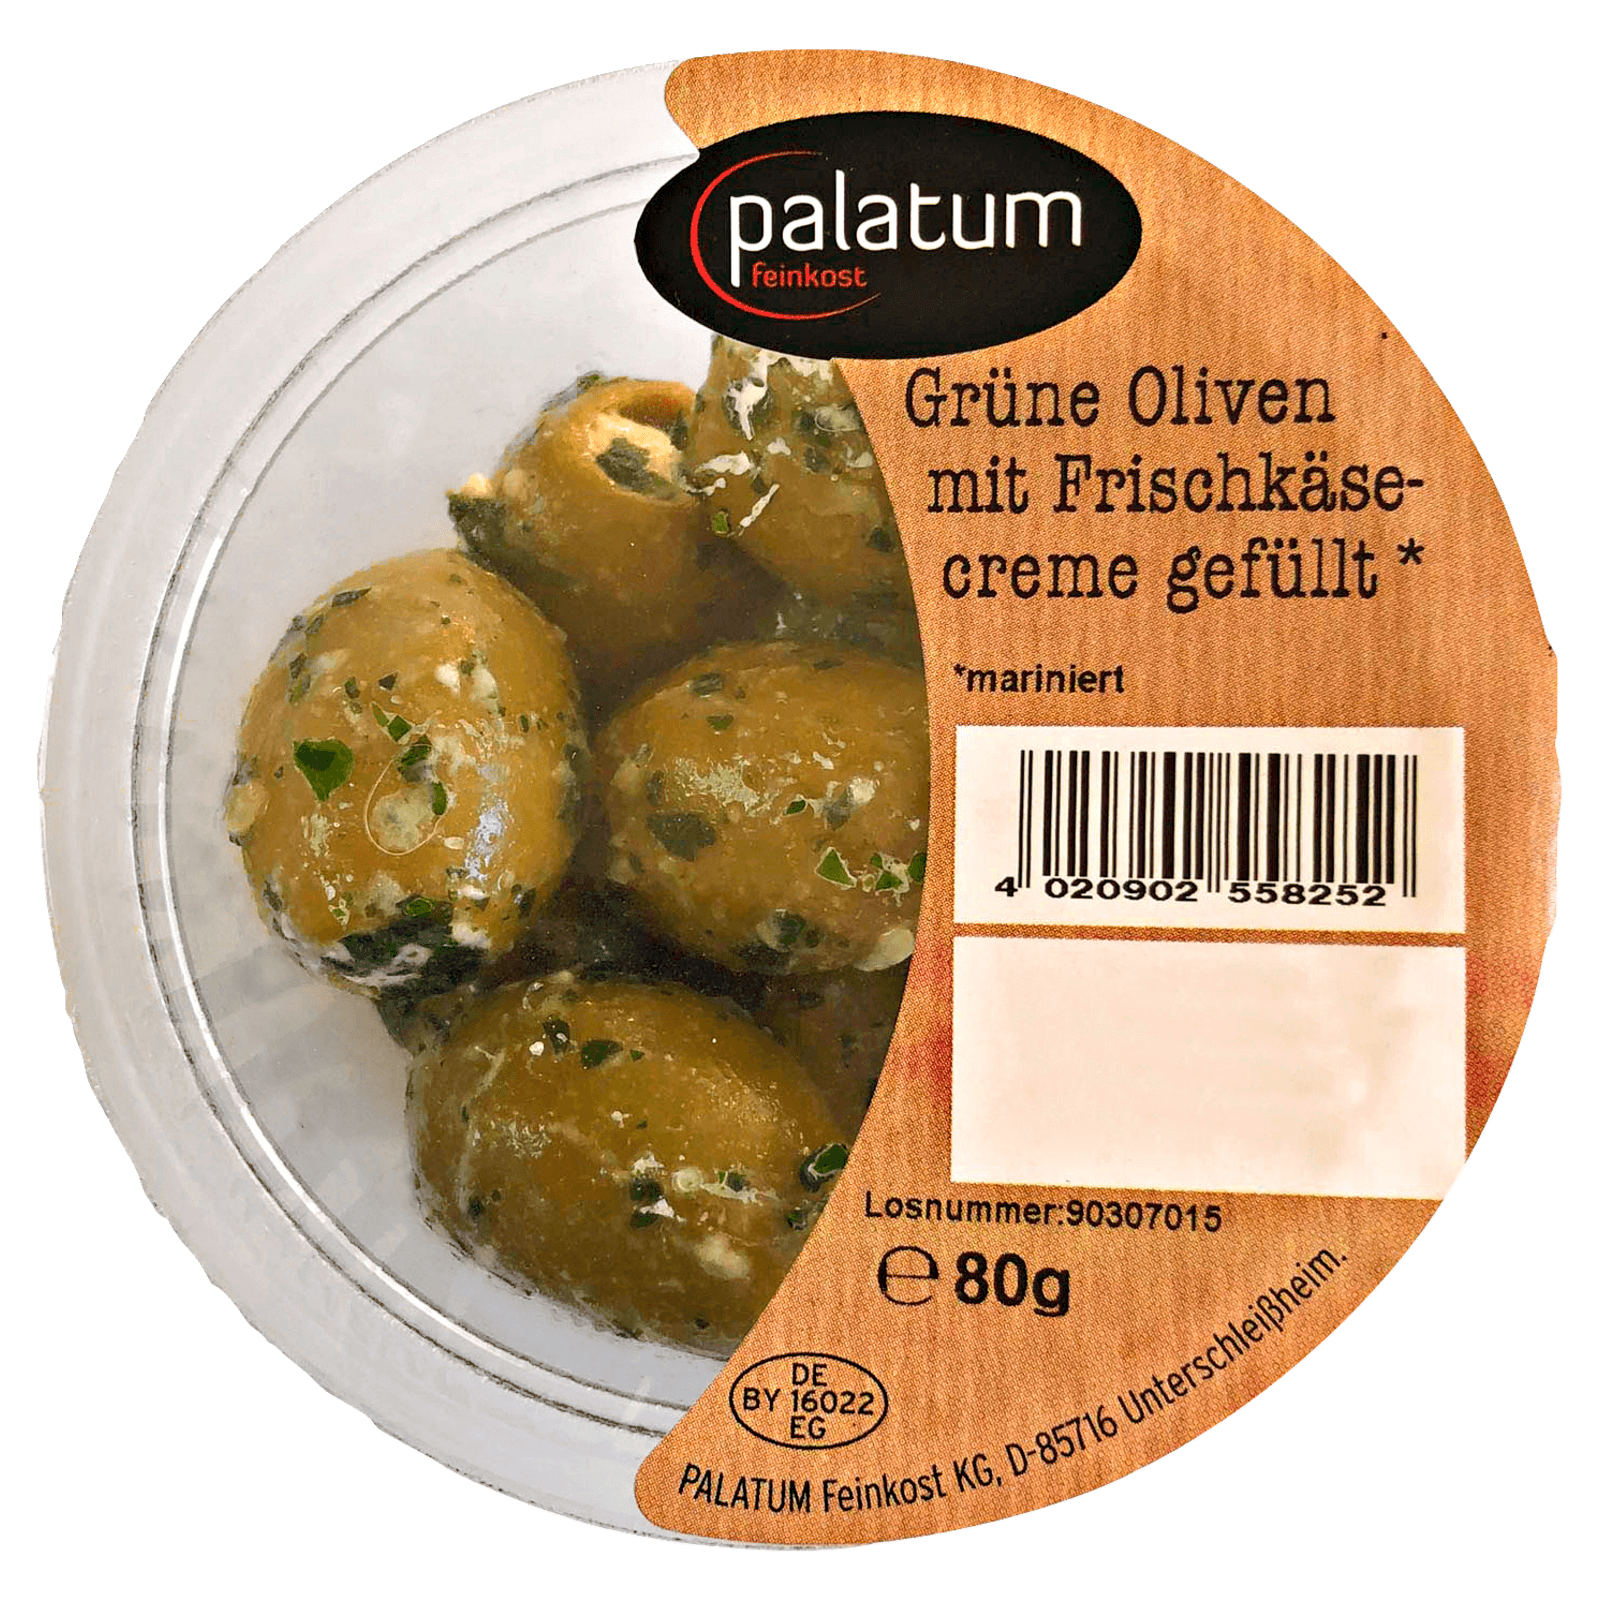 Palatum grüne Oliven mit Frischkäse 80g bei REWE online bestellen!